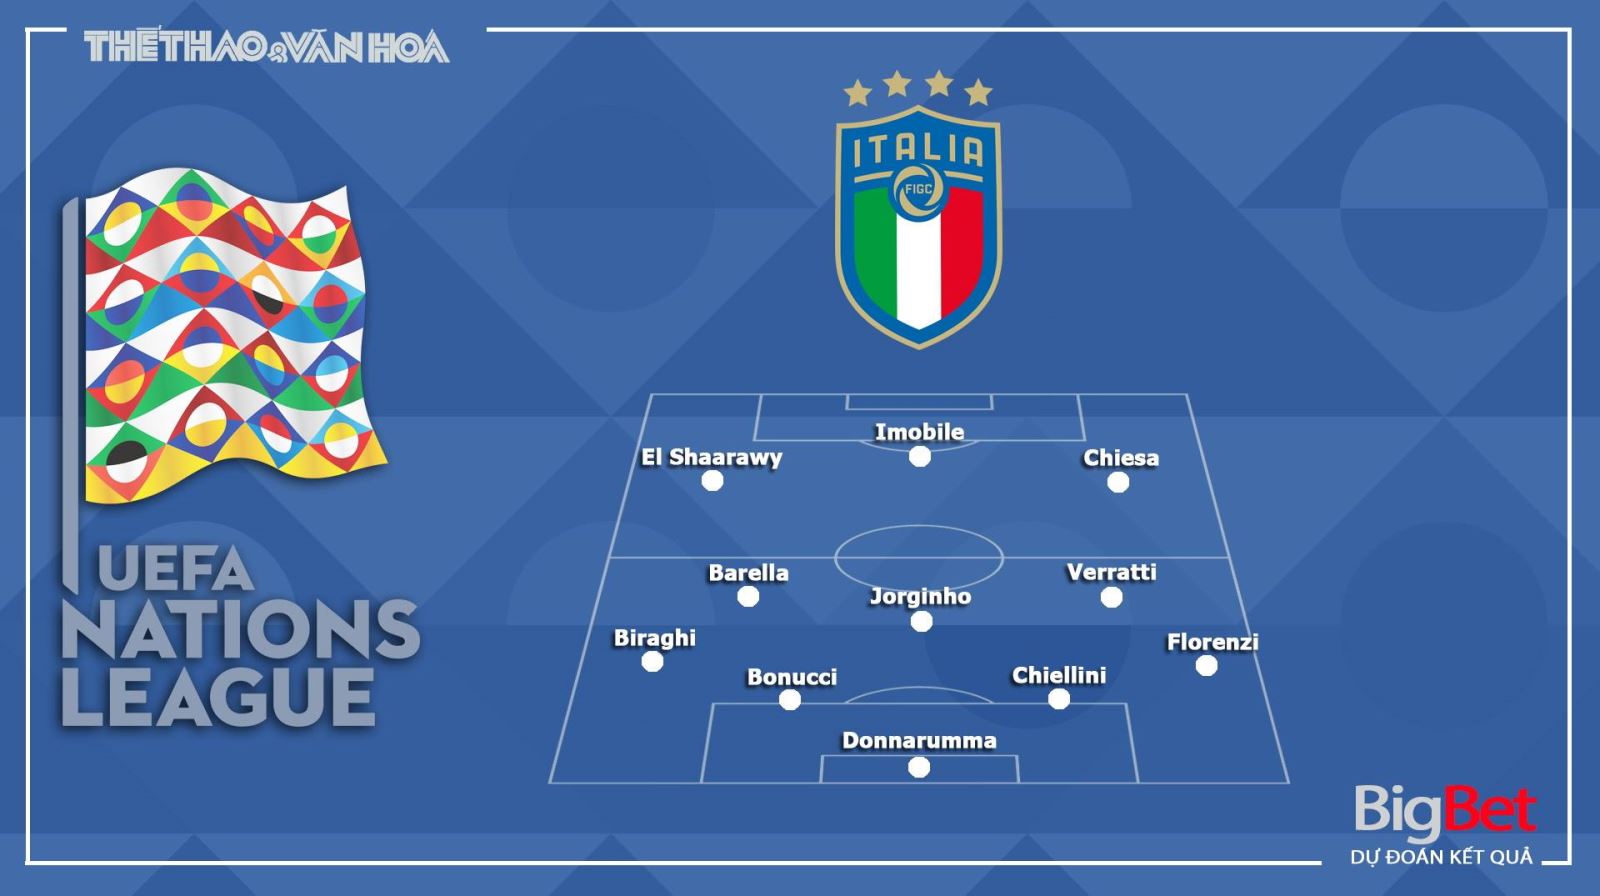 Italy vs Hà Lan, Italy, Hà Lan, trực tiếp Italy vs Hà Lan, so kèo Italy vs Hà Lan, nhận định Italy vs Hà Lan, kèo bóng đá Italy vs Hà Lan